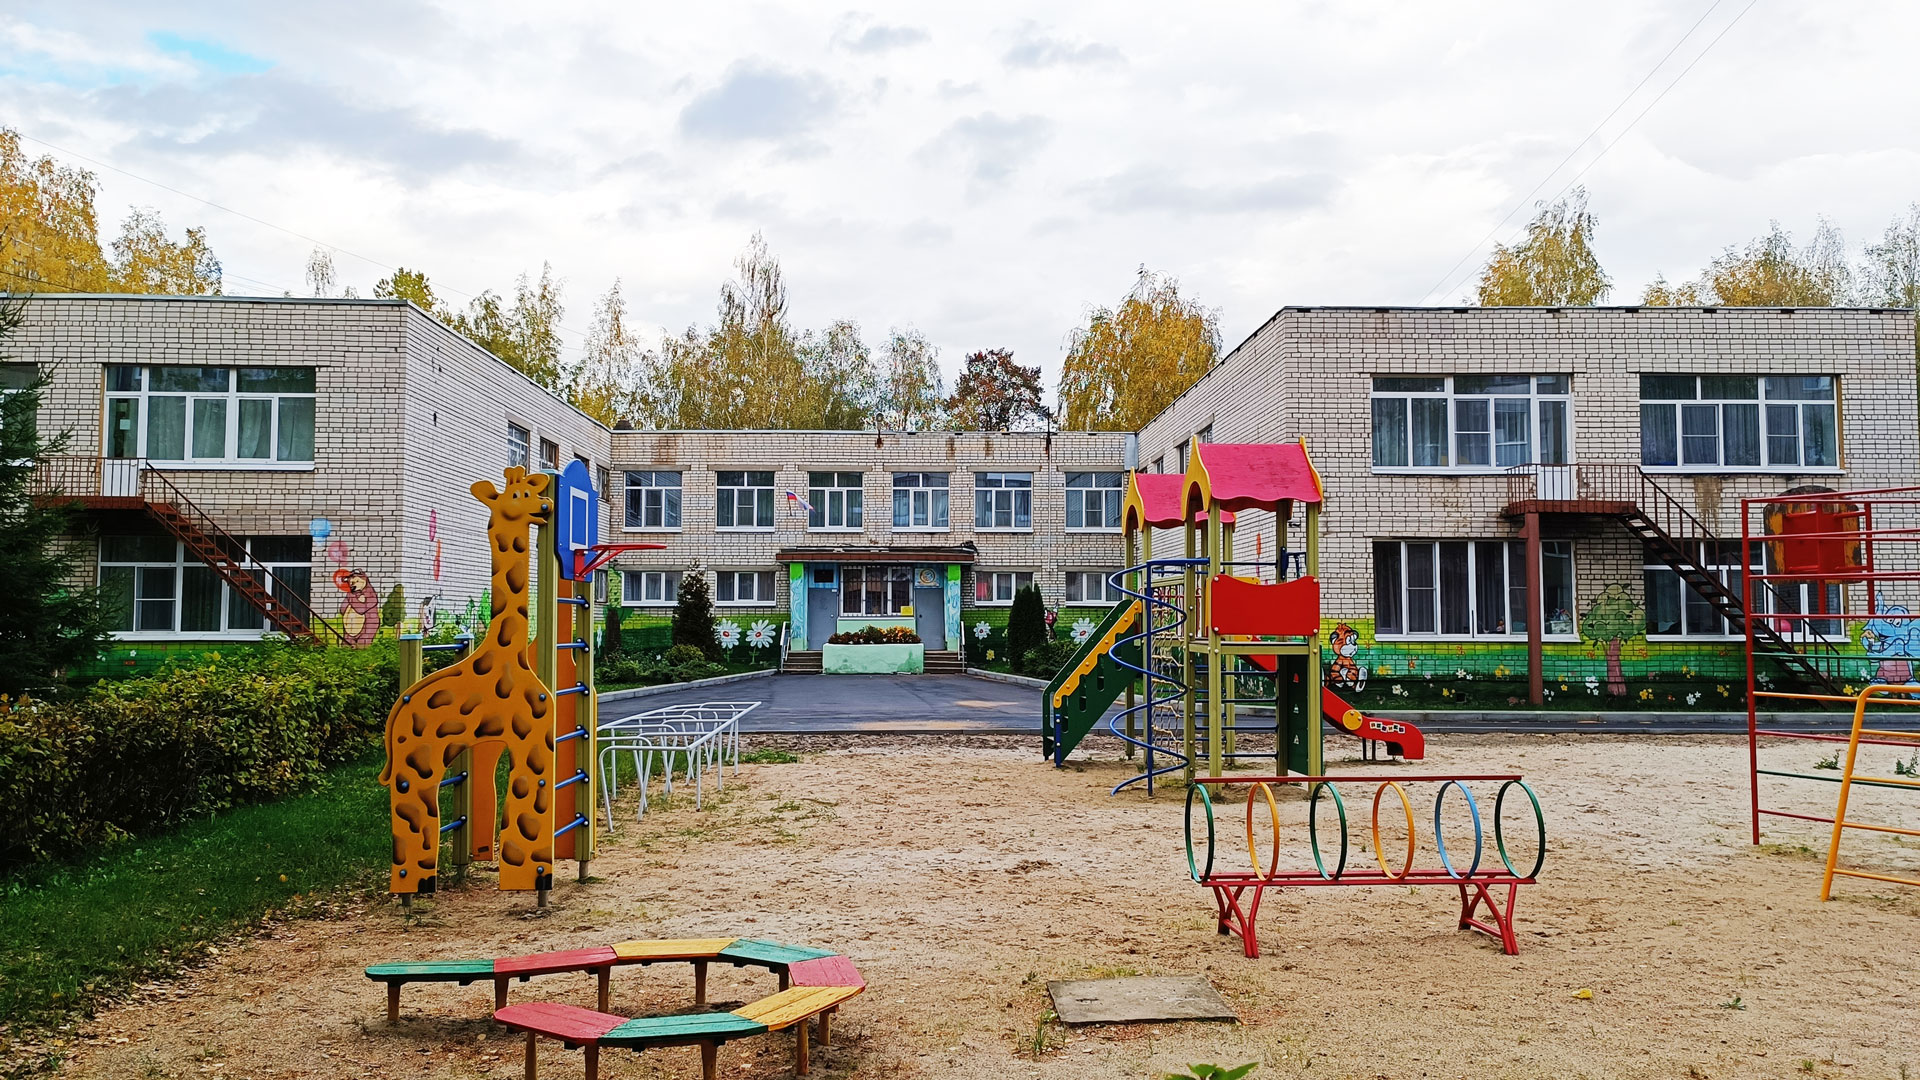 Детский сад 93 Ярославль: общий вид здания.